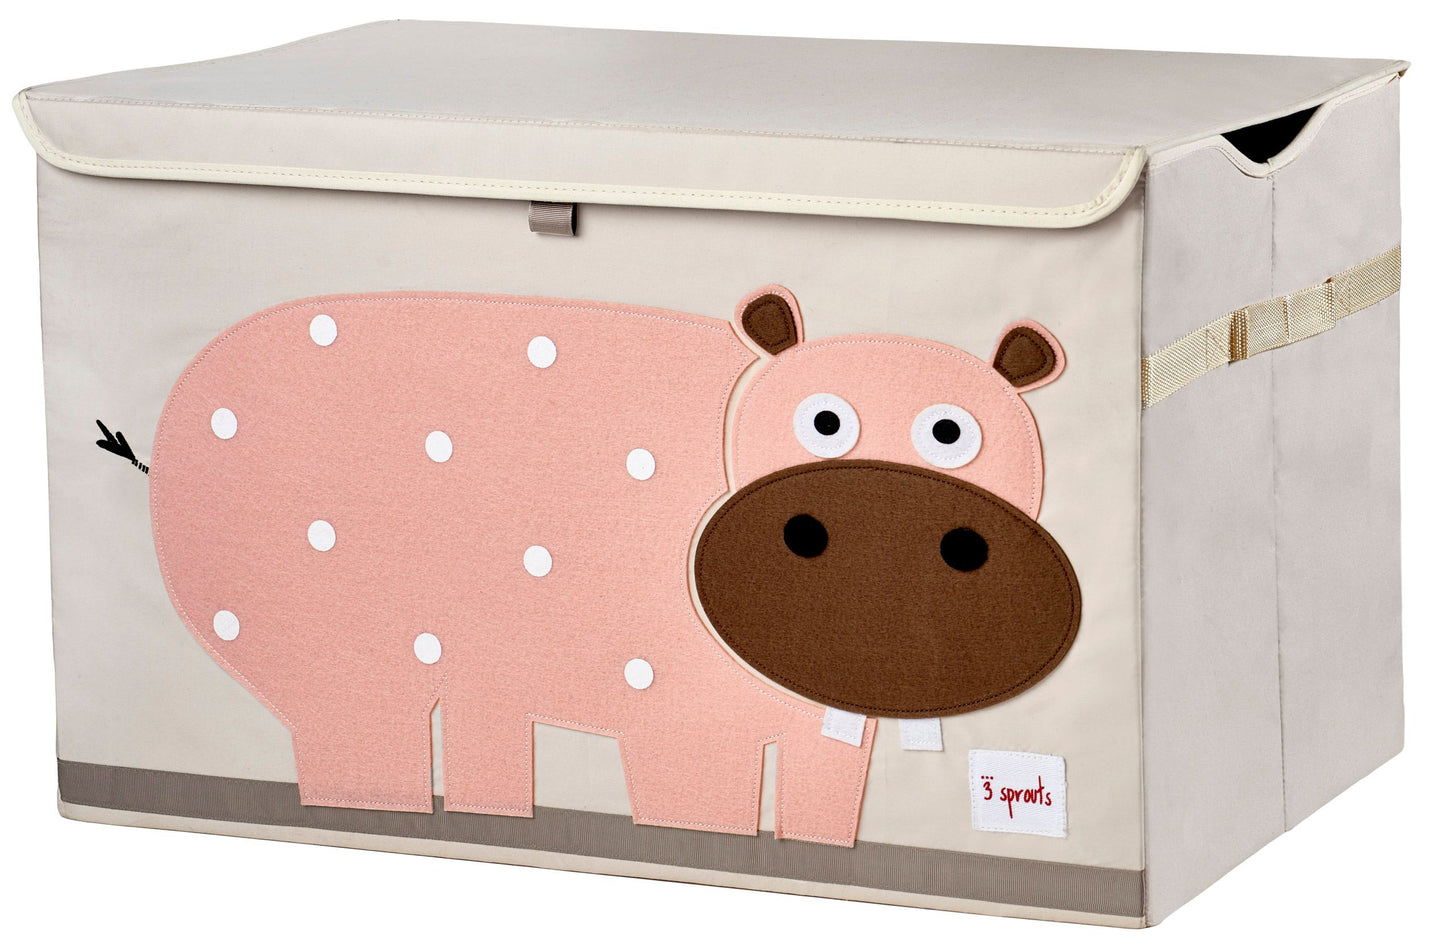 speelgoedkoffer nijlpaard - coffre à jouets hippo